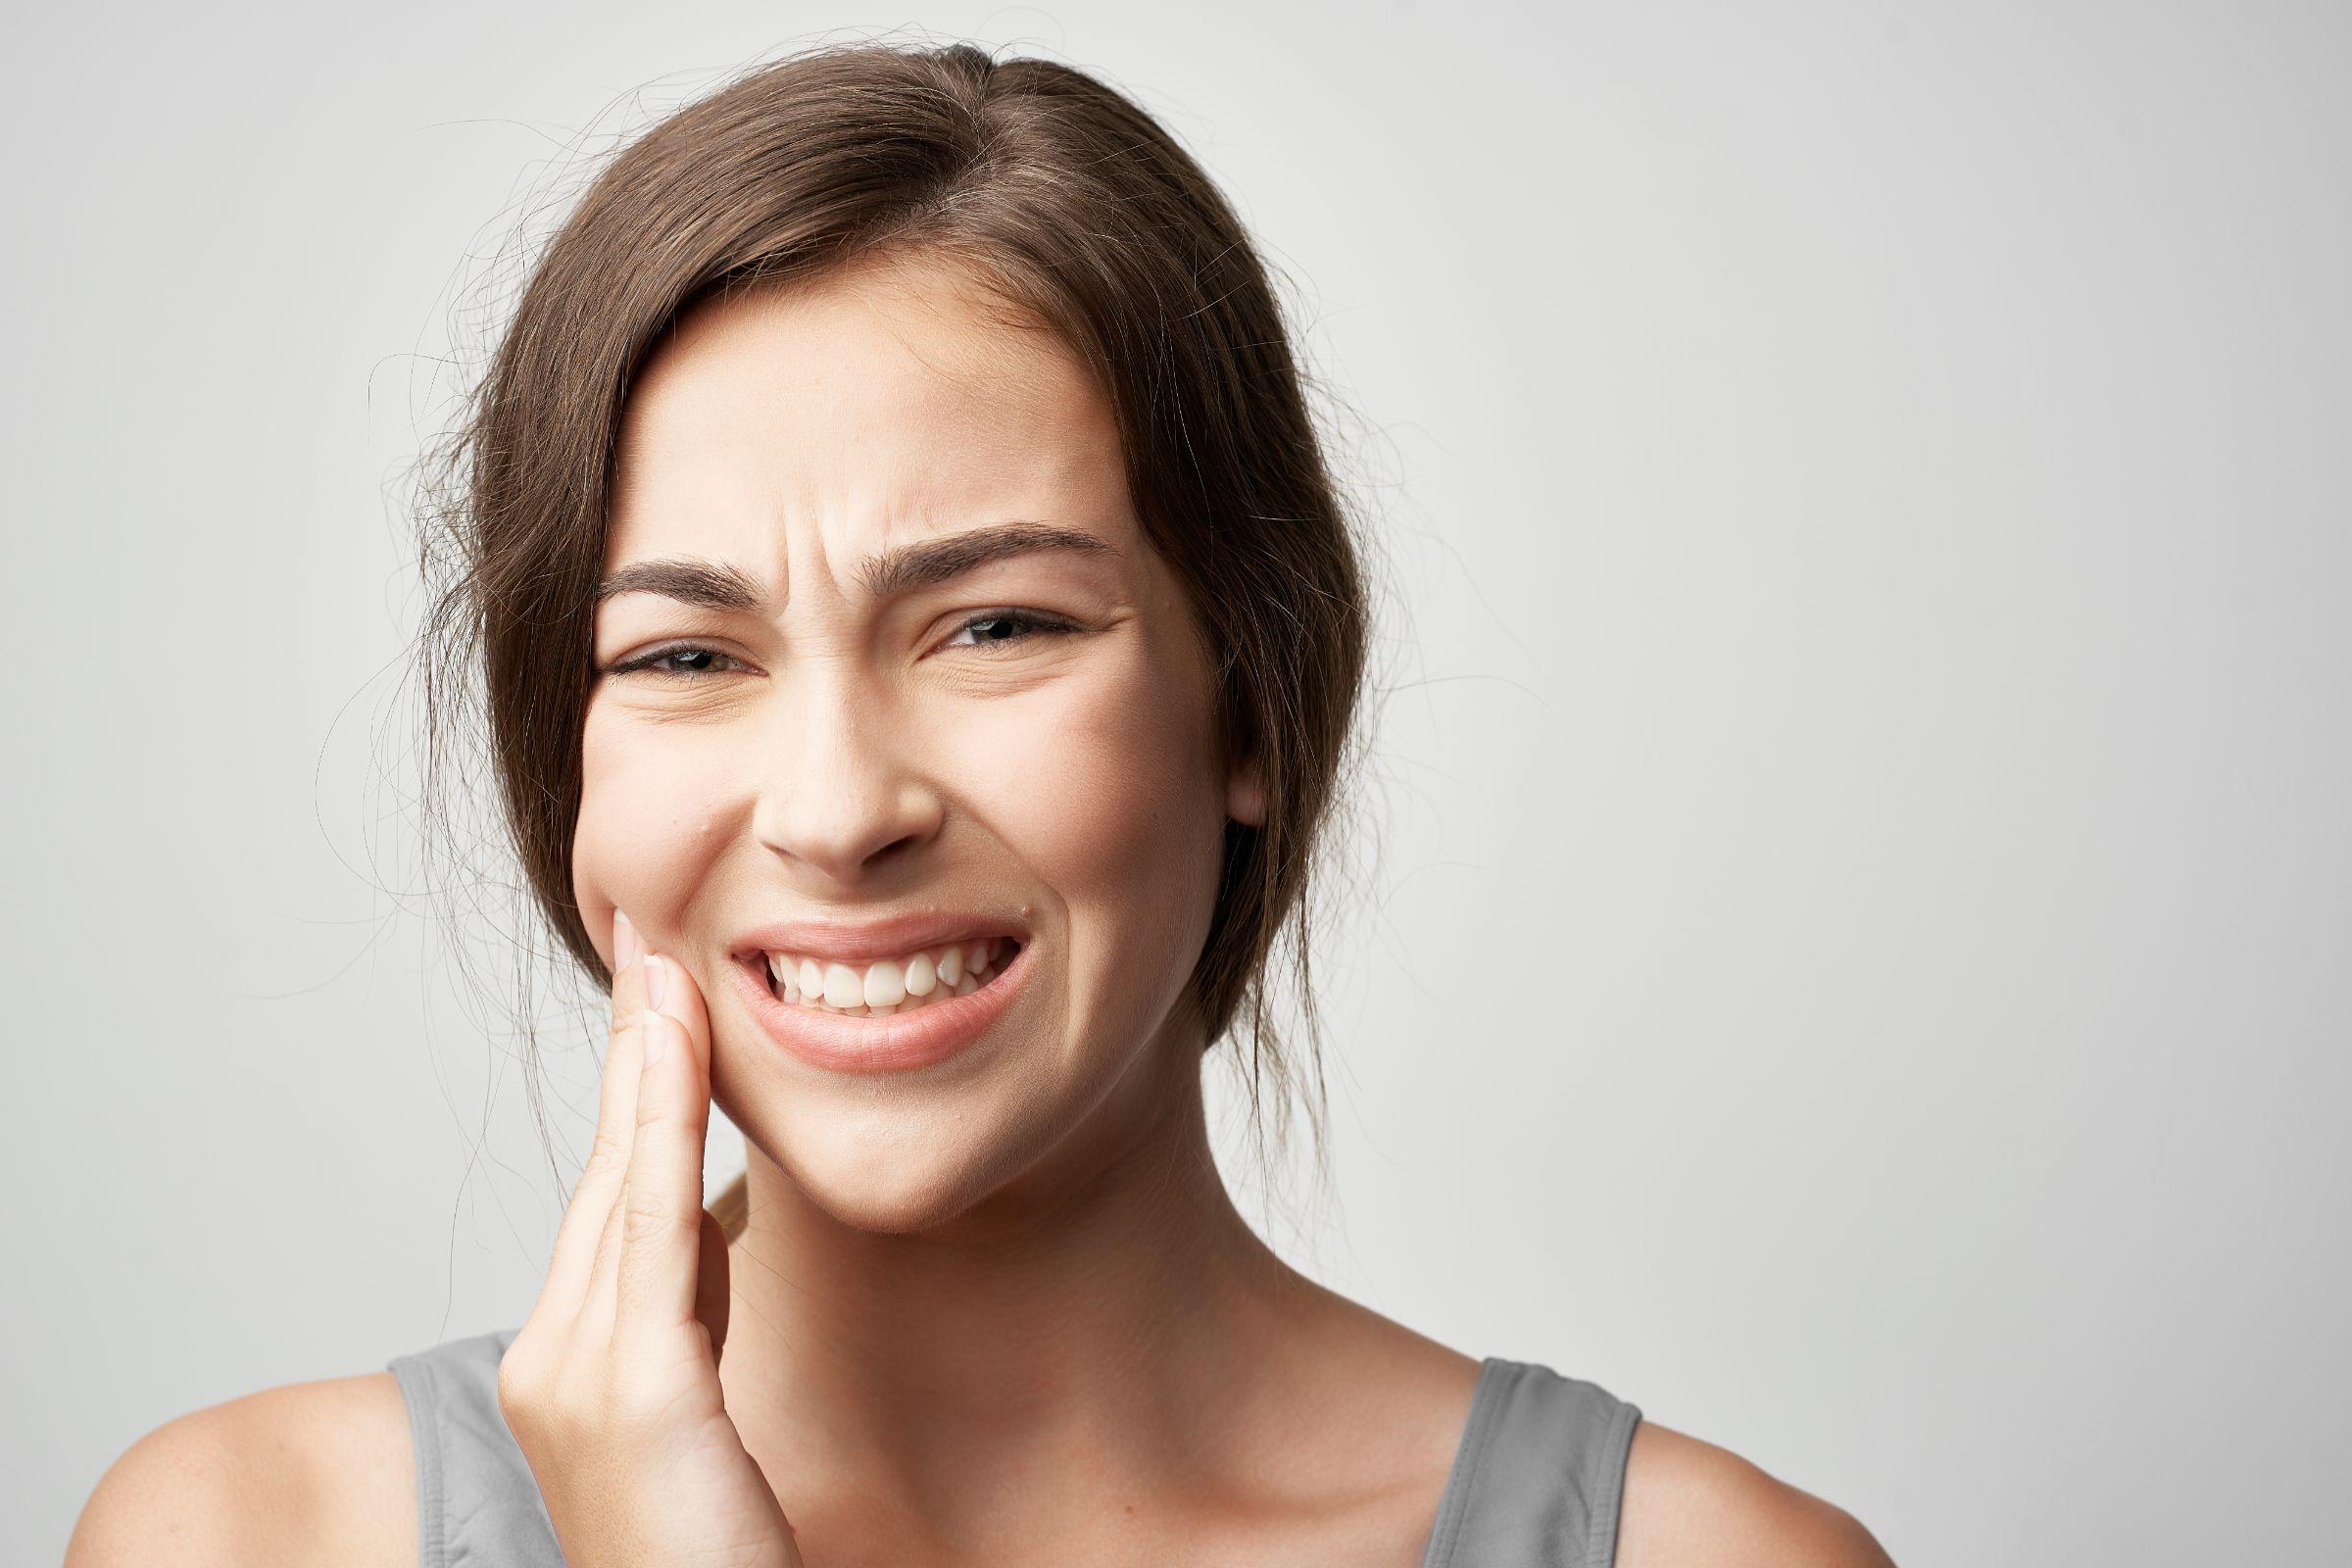 【歯科医師監修】虫歯や歯周病による突然の歯痛に対する9つの対処法